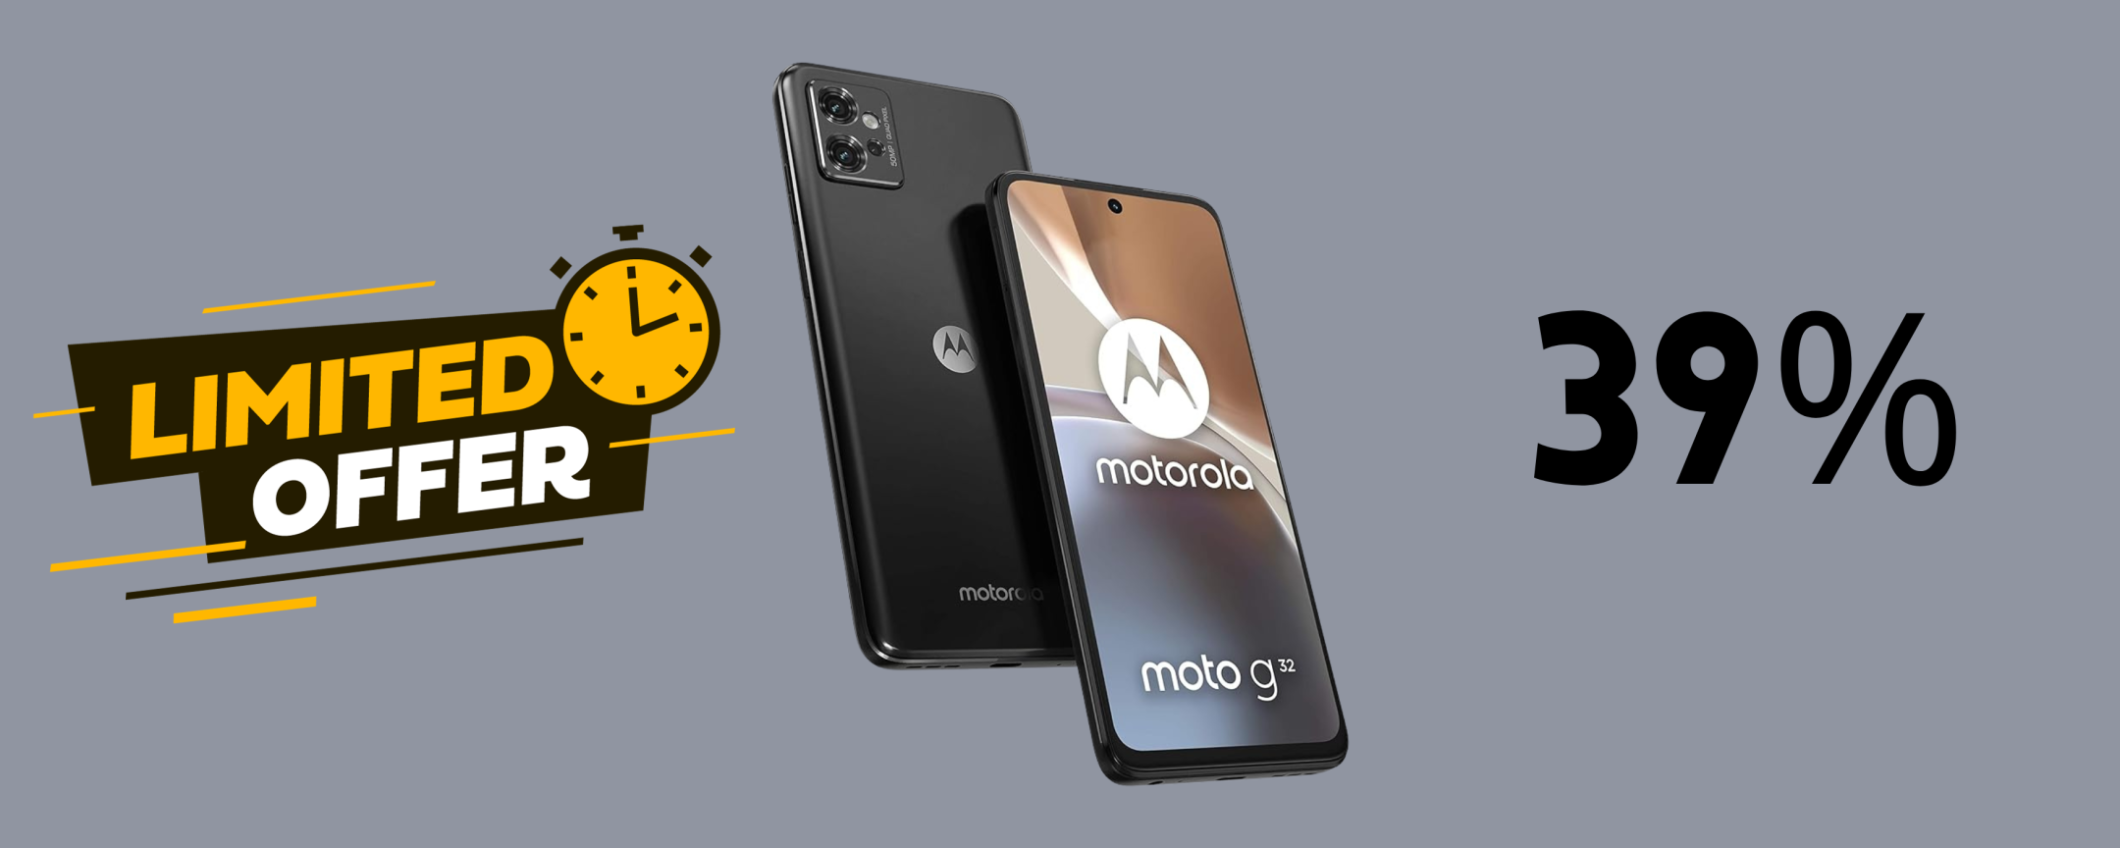 Motorola Moto g32 in SUPER sconto del 39% a soli 140€